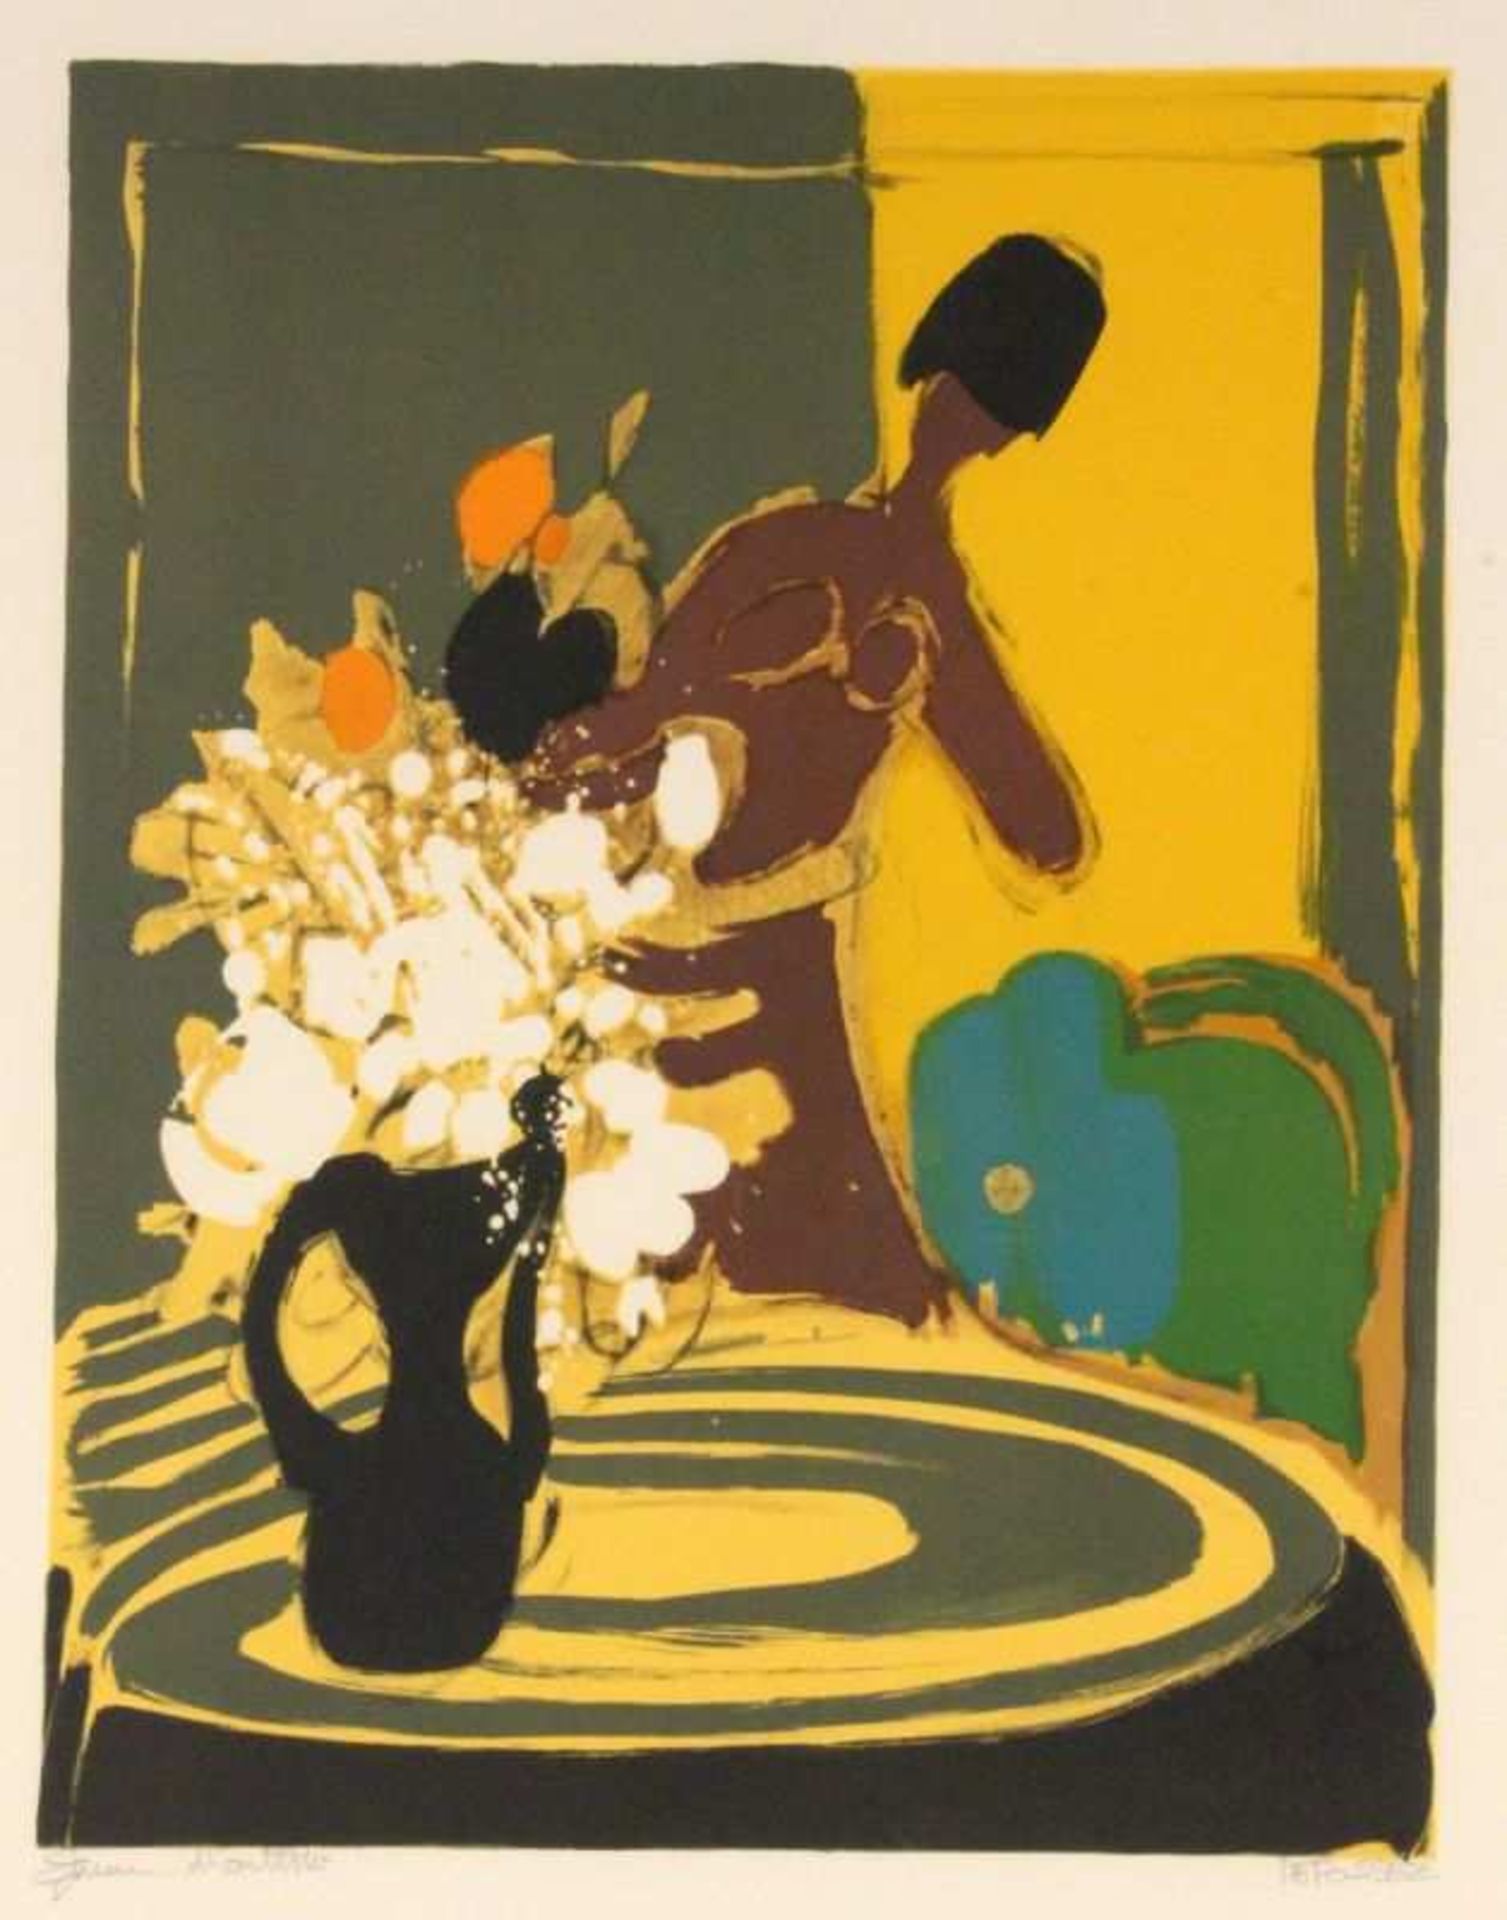 DEFOSSEZ, ALFRED Paris 1932 Femme au bouquet. Farblitho, handsigniert. 49x38cm, Ra. DEFOSSEZ, ALFRED